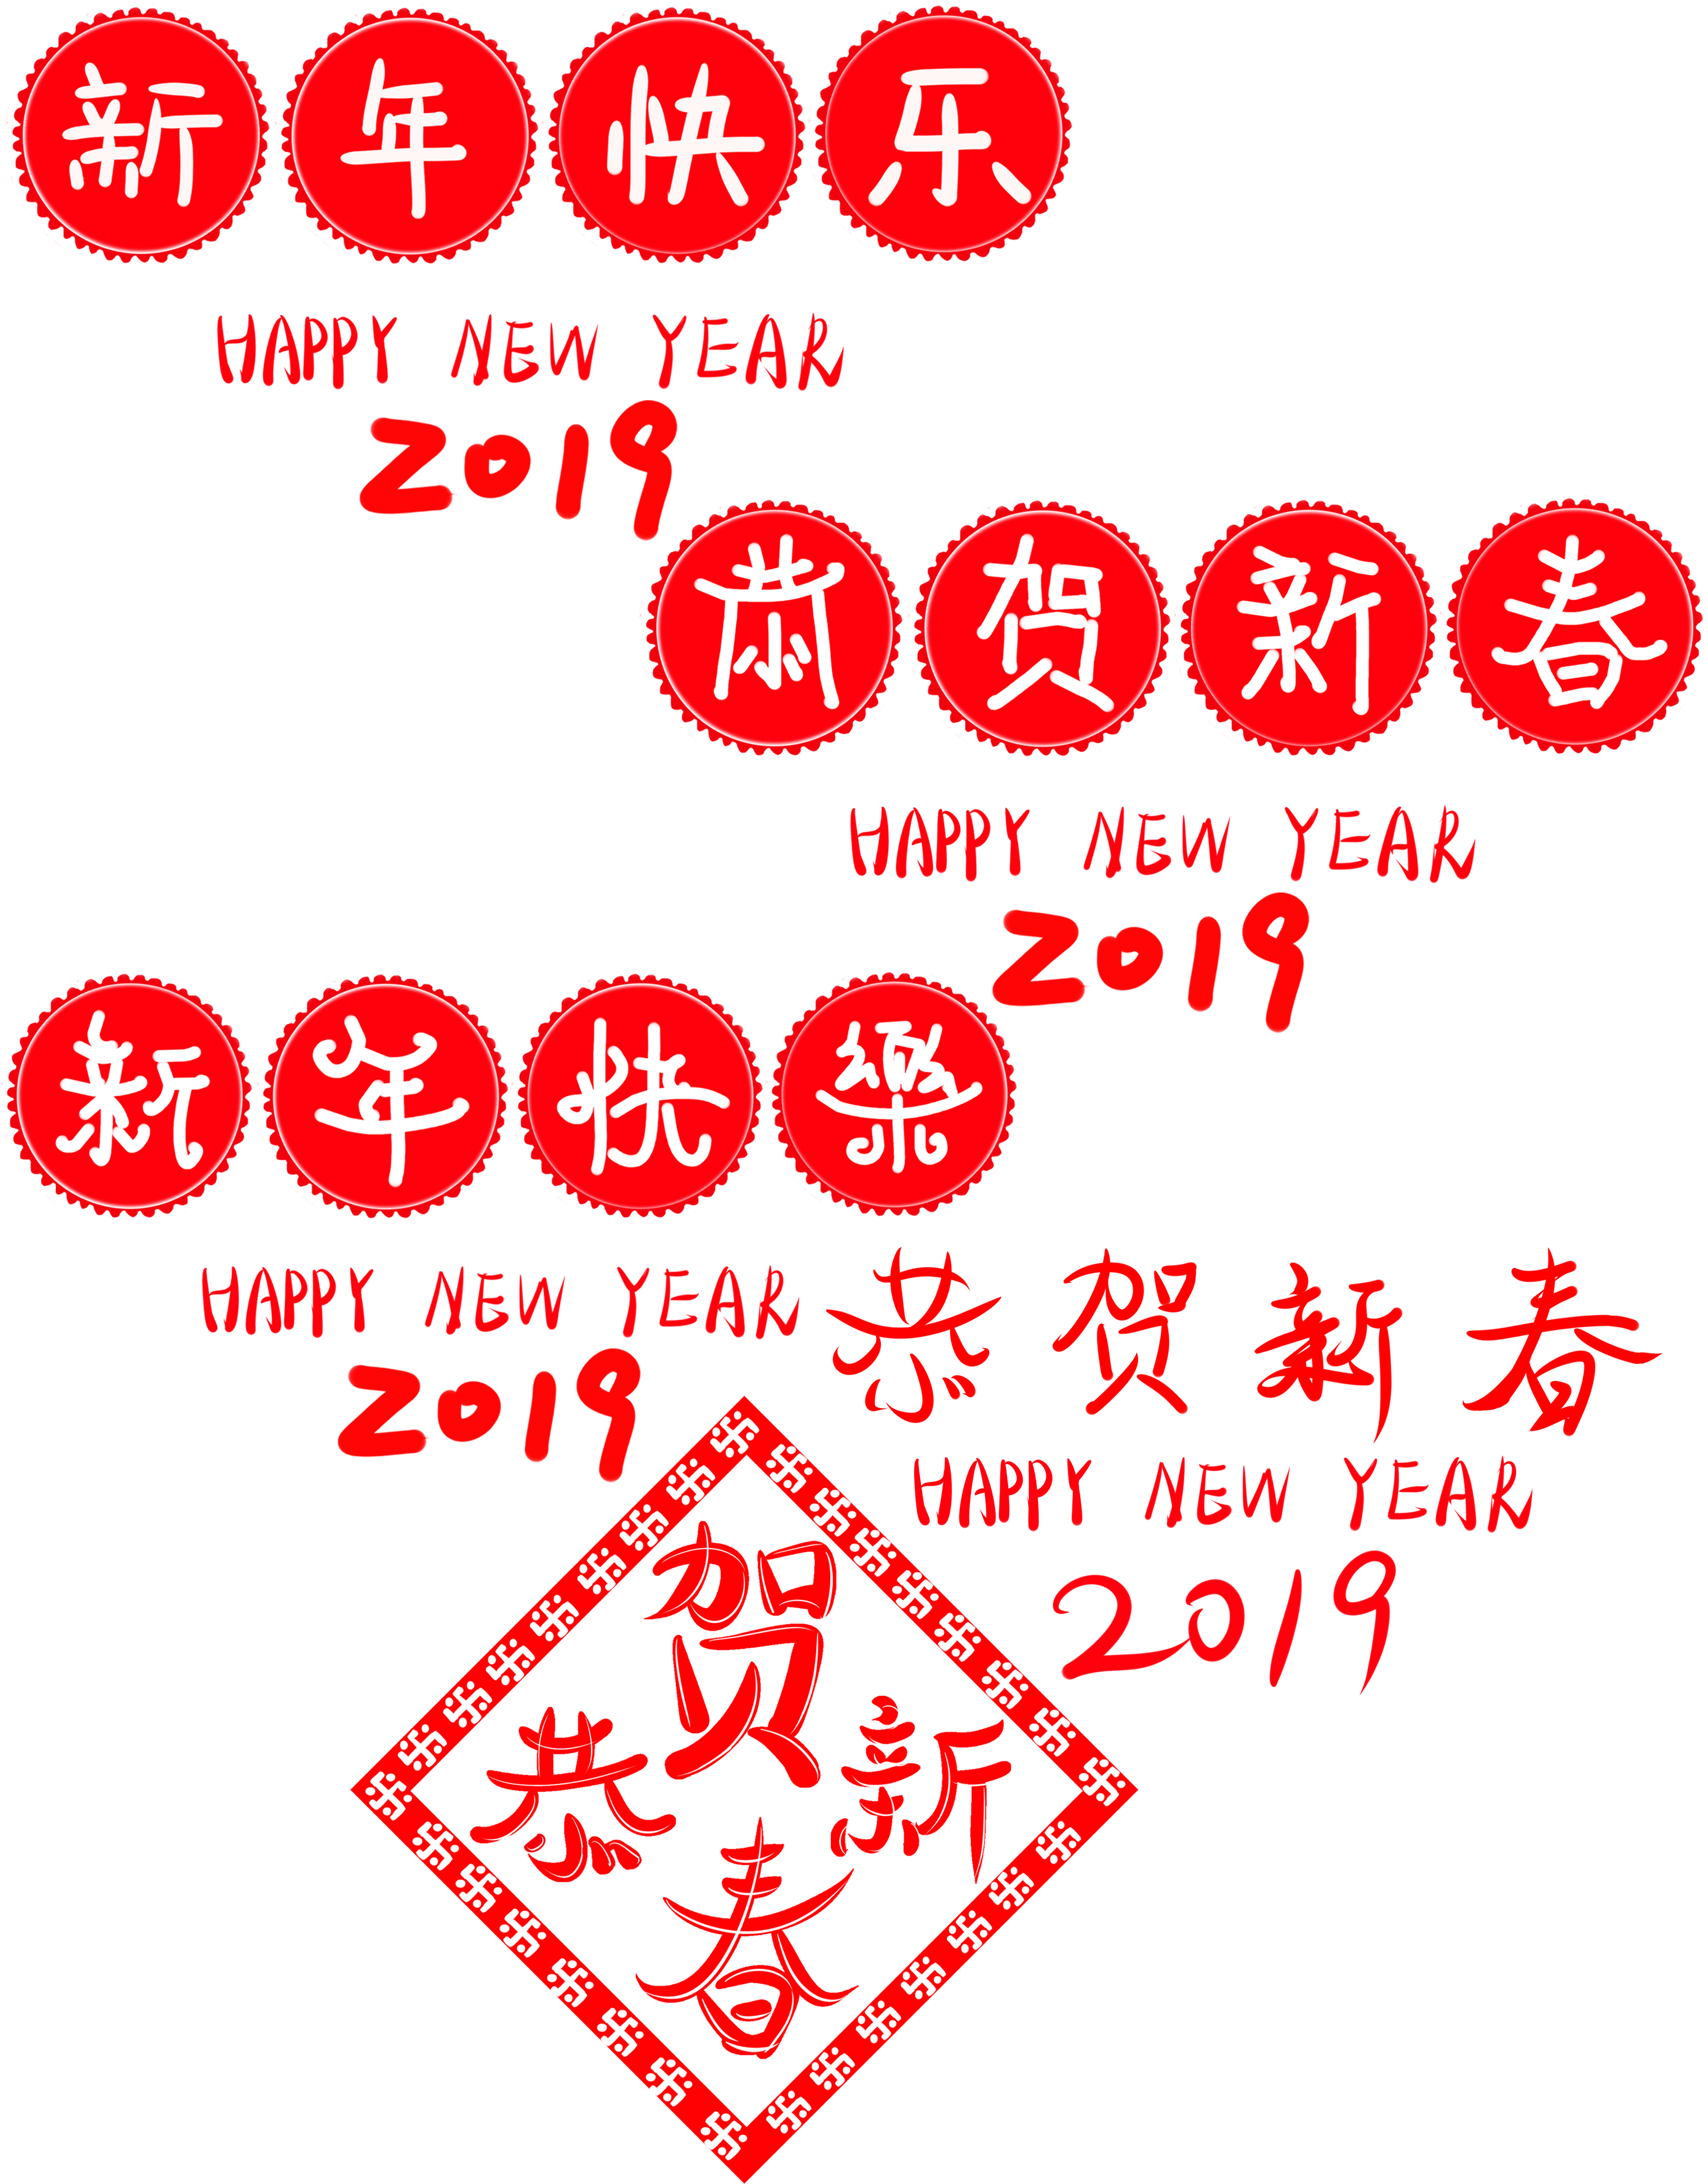 Felice Anno Nuovo Congratulazioni Font Word Art Png